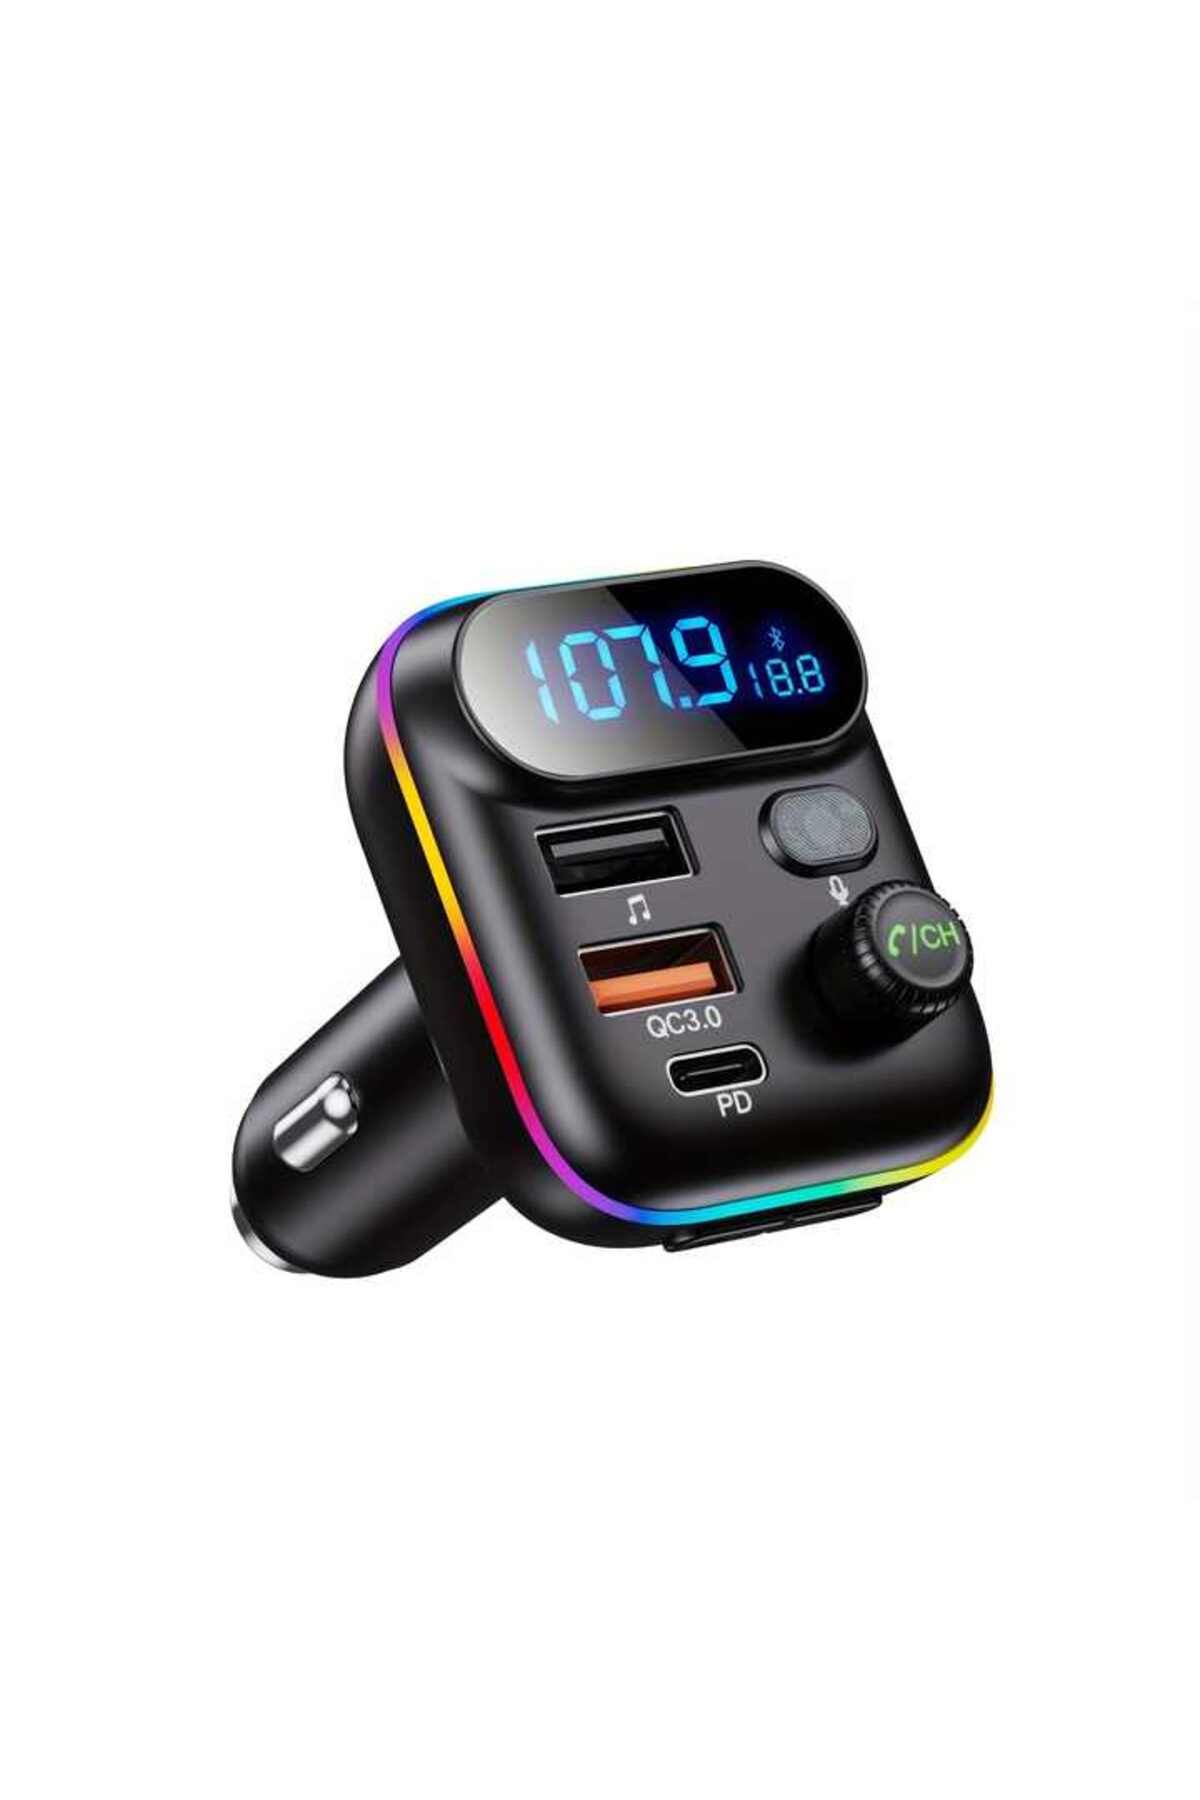 Deppo Trend Araç Fm Transmitter Bluetooth Araç Kiti USB Type-C MP3 SD Kart Flash Için Uygun PD Çakmaklık Girişli